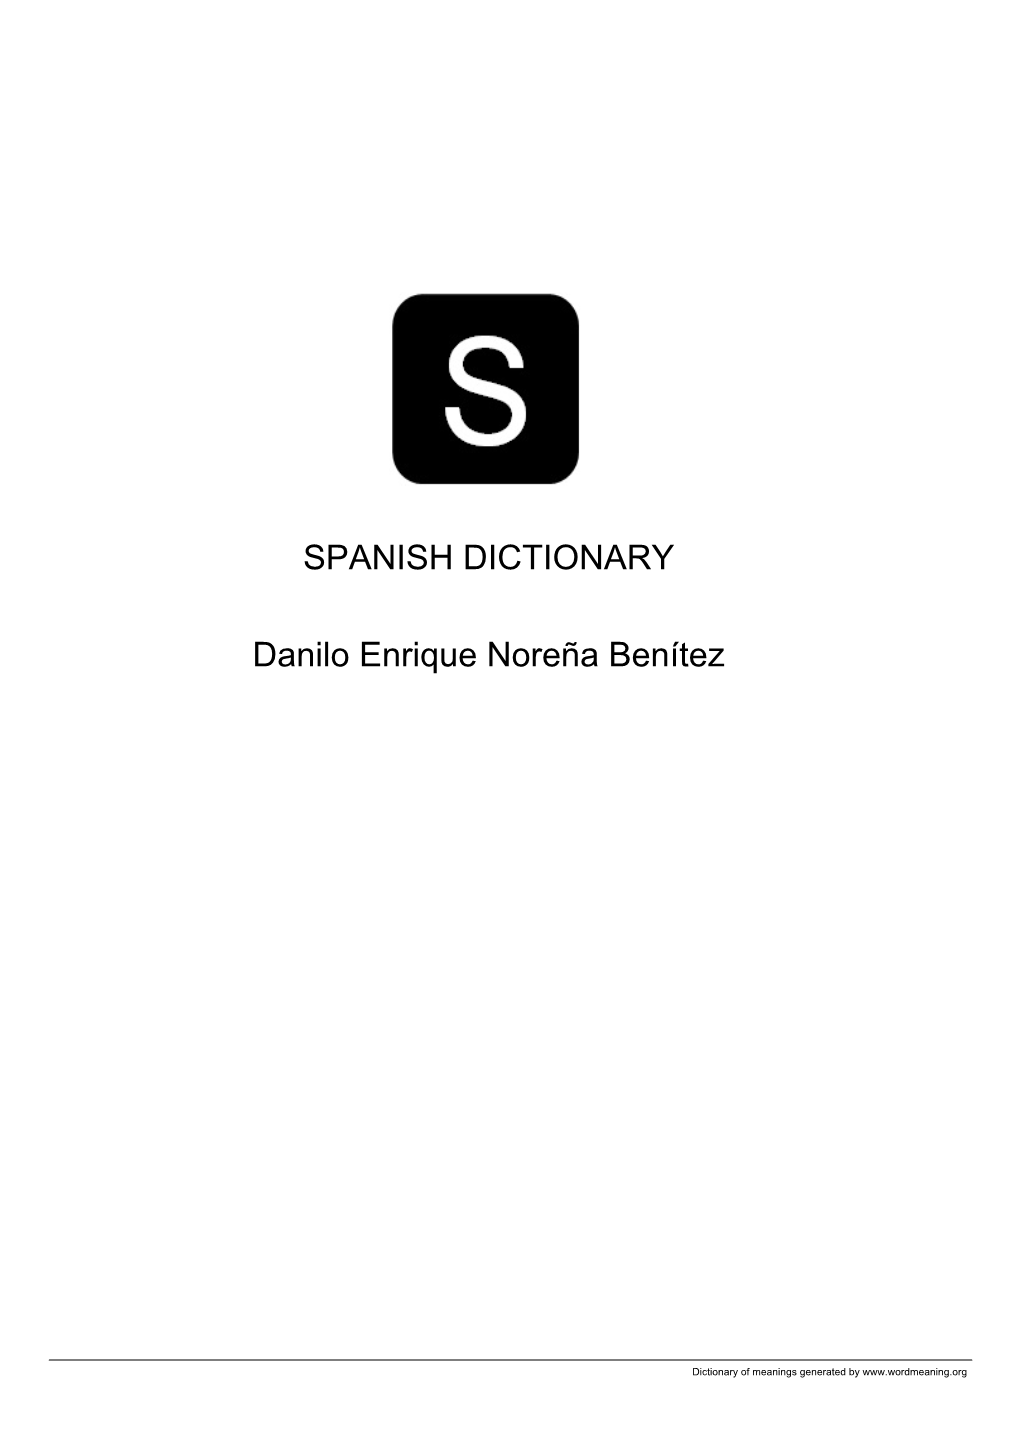 Spanish Open Dictionary by Danilo Enrique Noreña Benítez VOL13